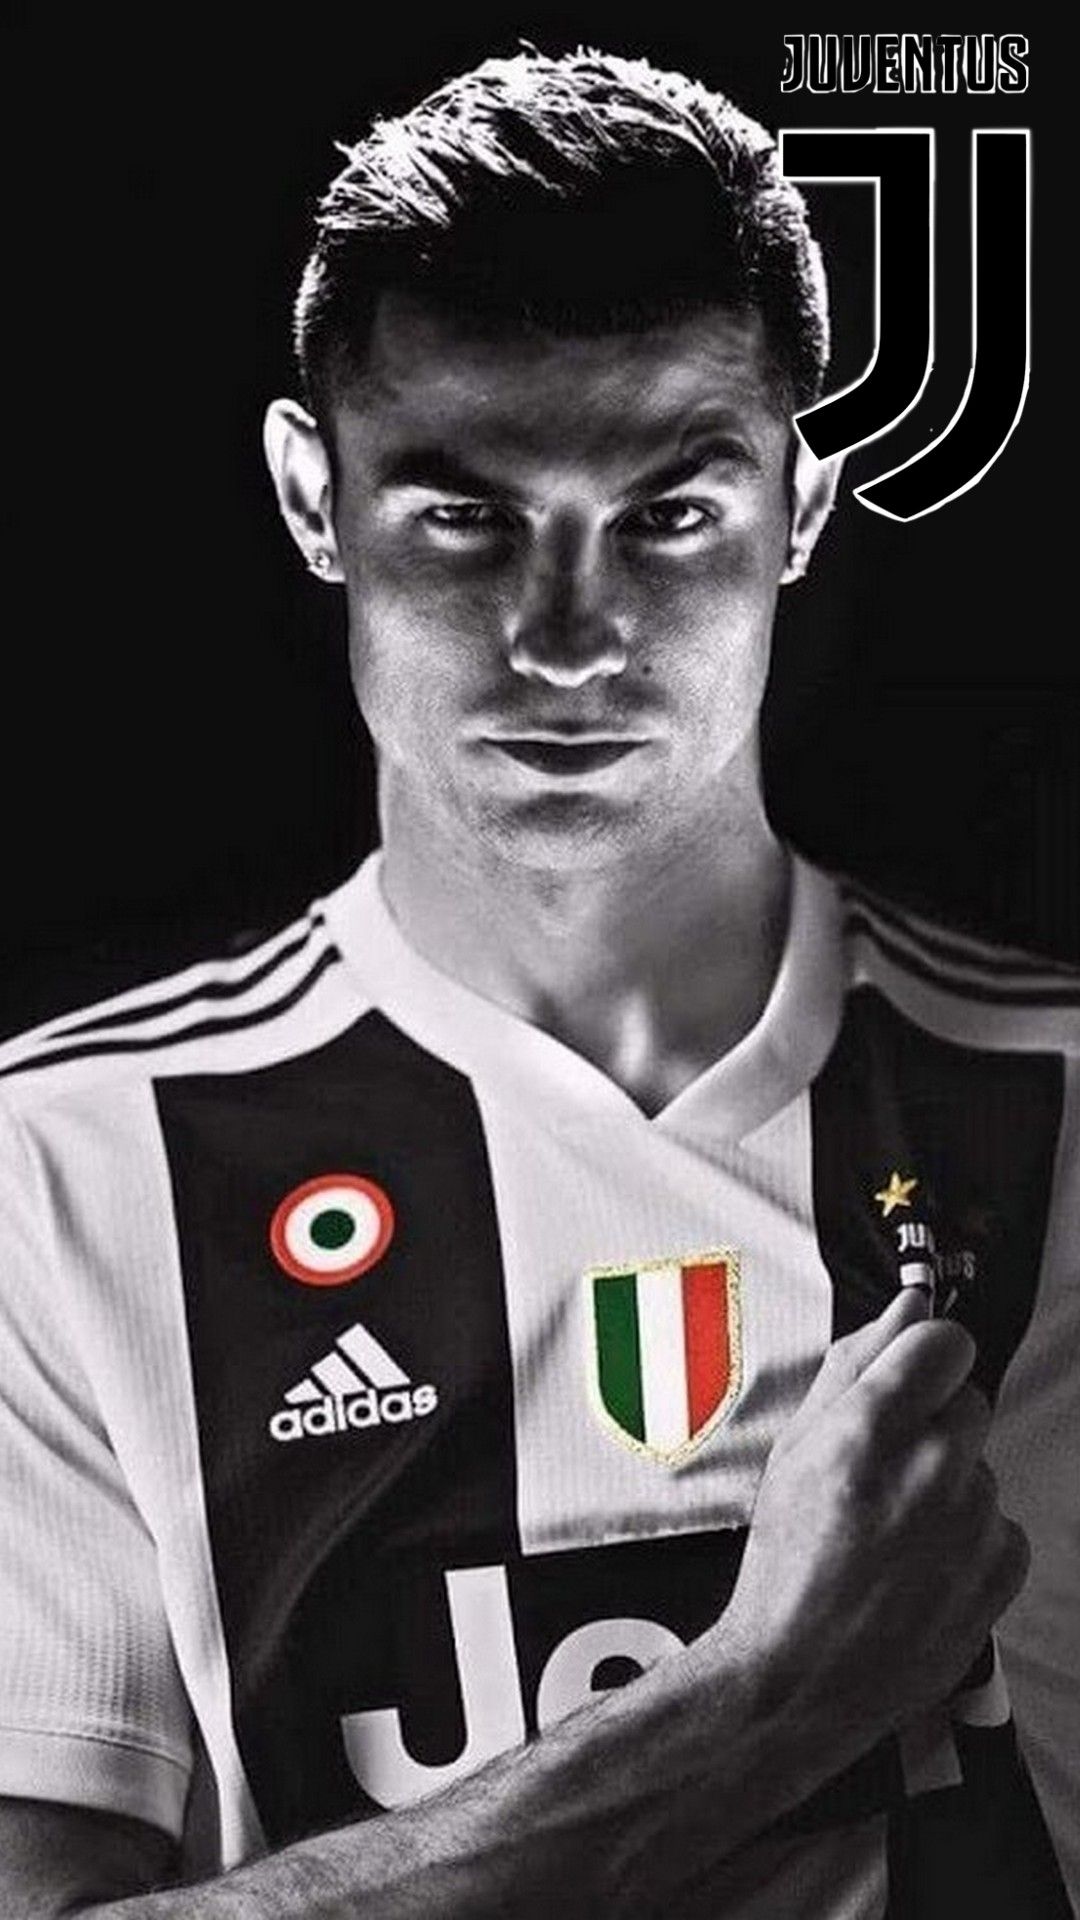 Fondo de pantalla de iPhone HD Cristiano Ronaldo Juventus | Fondo de pantalla de fútbol 2019